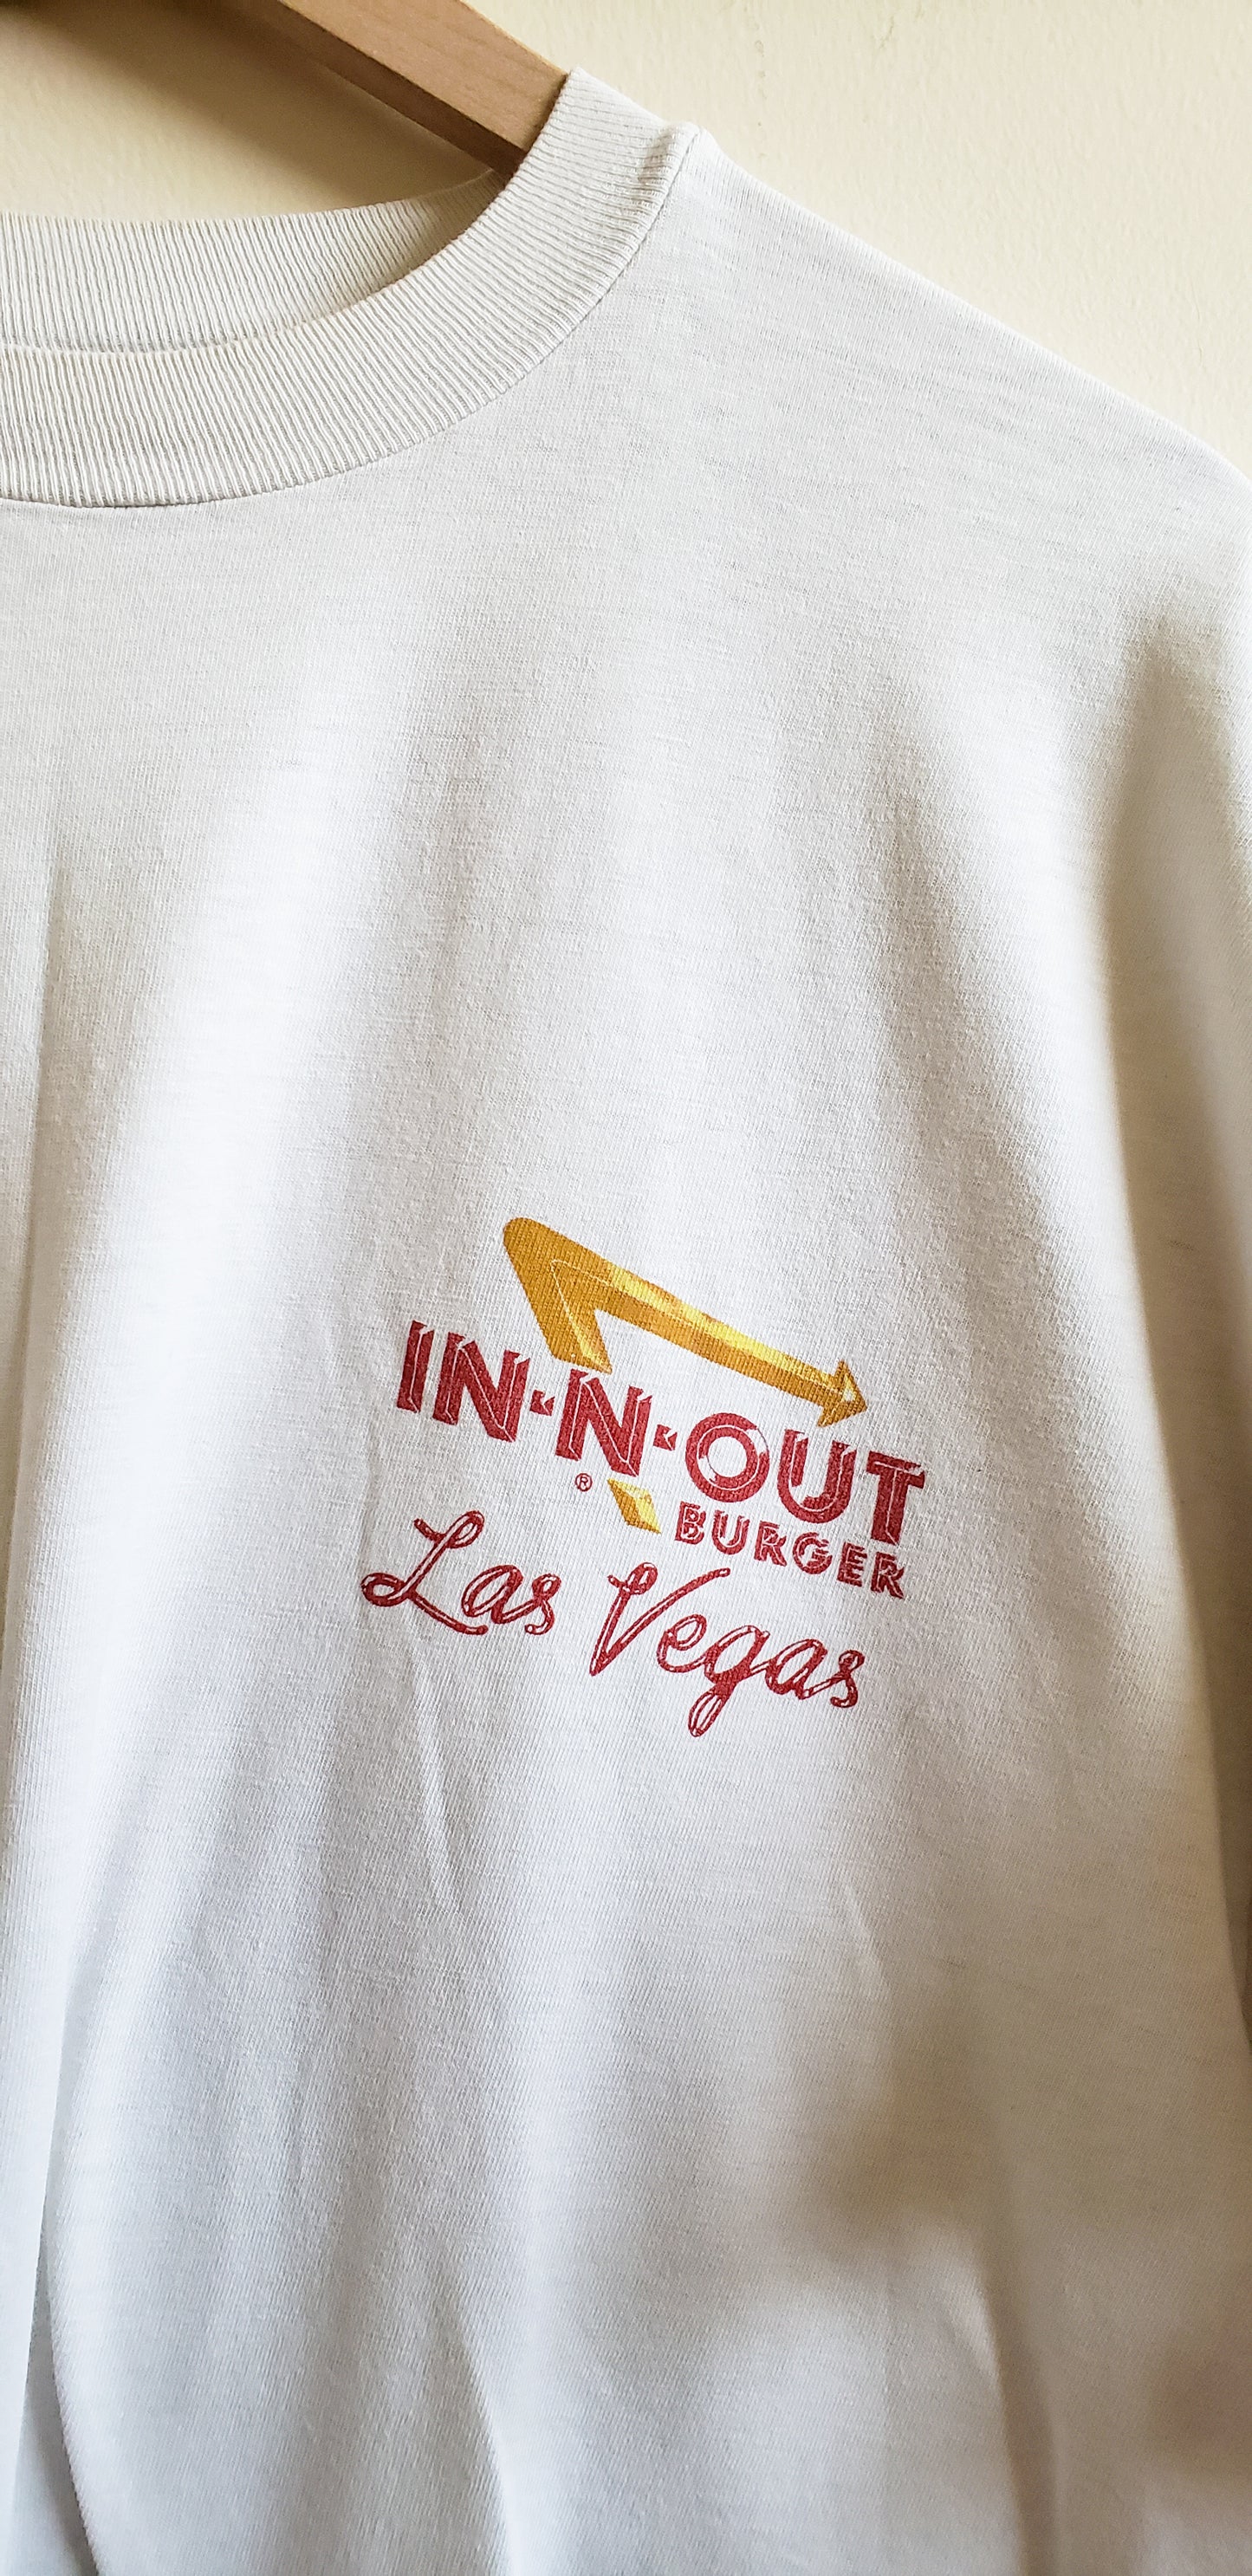 Las Vegas IN-N-OUT Burger Tee